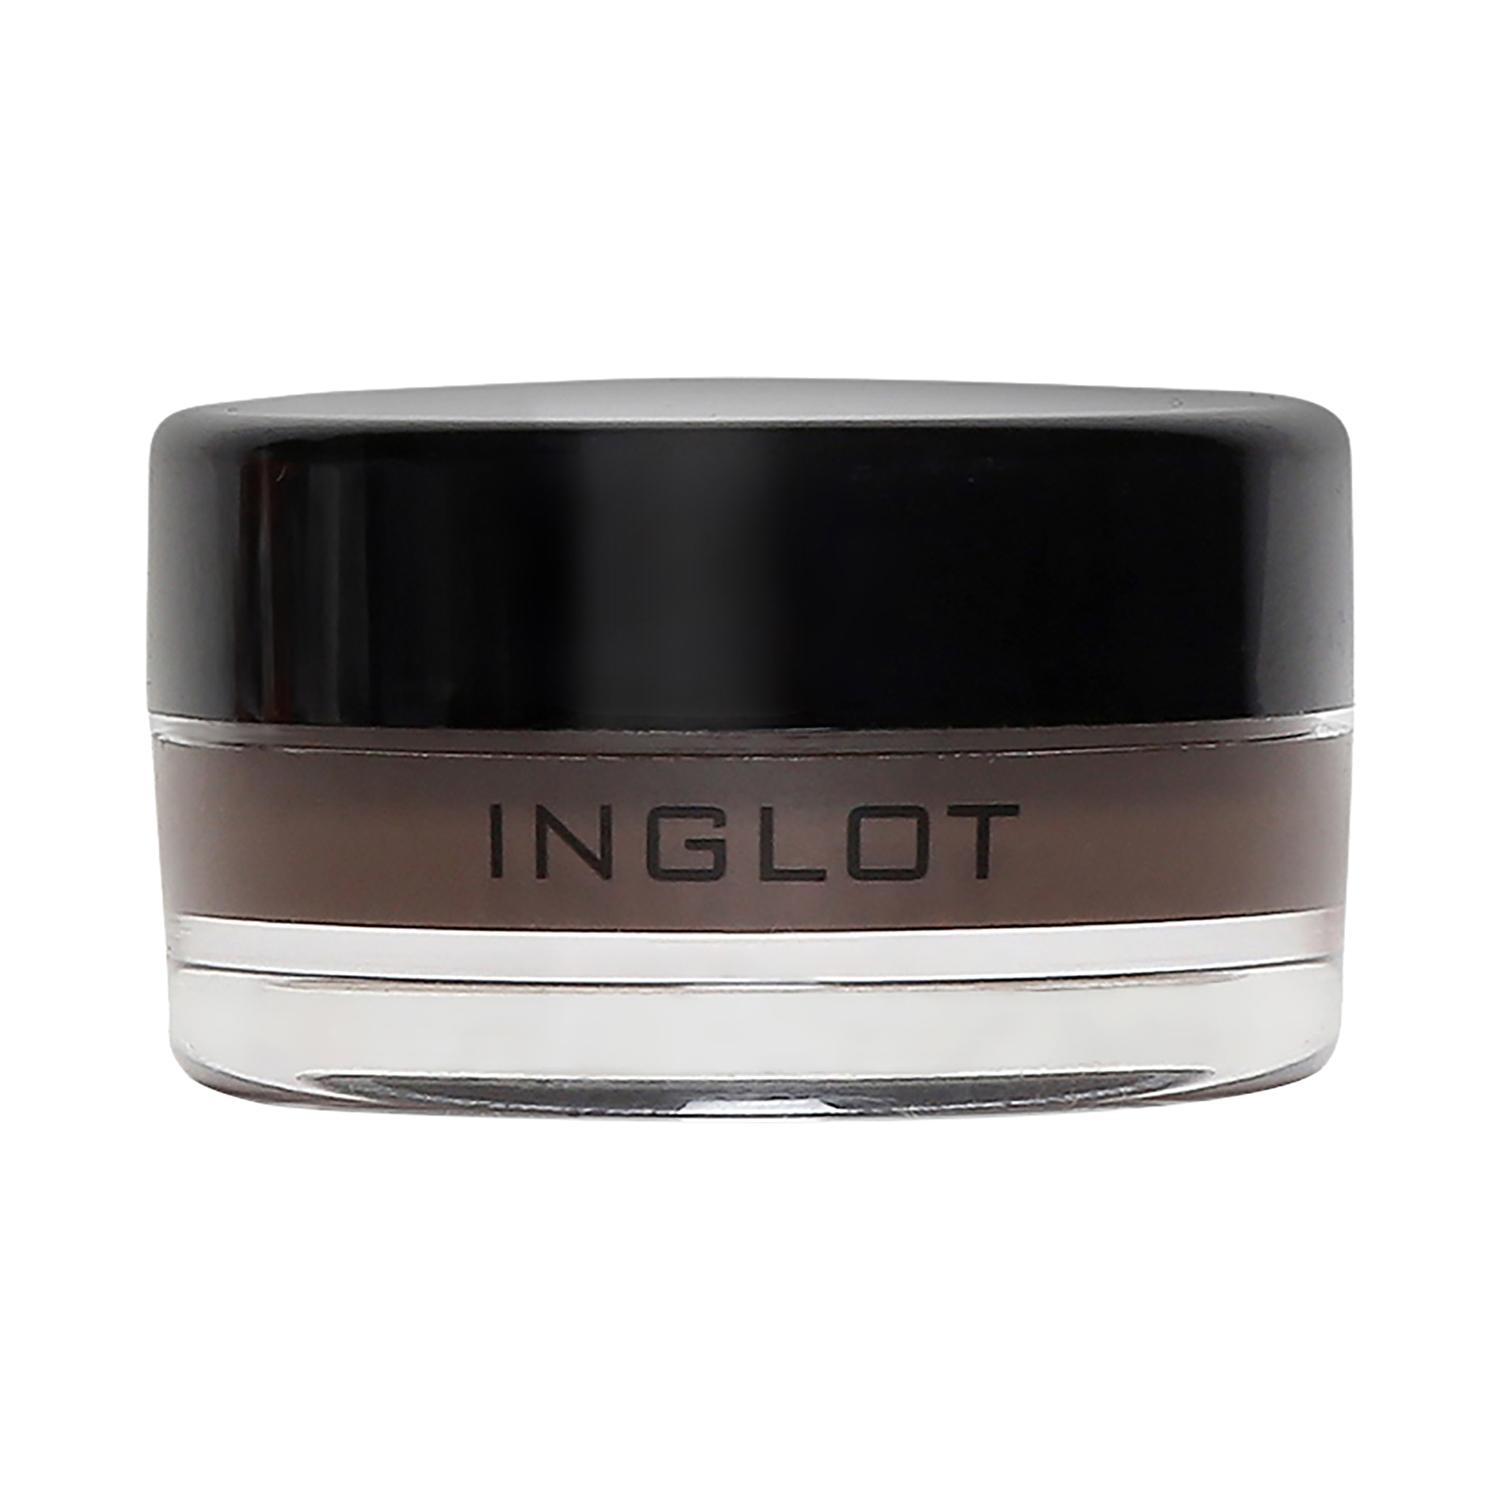 inglot amc eyeliner gel - 90 (5.5g)